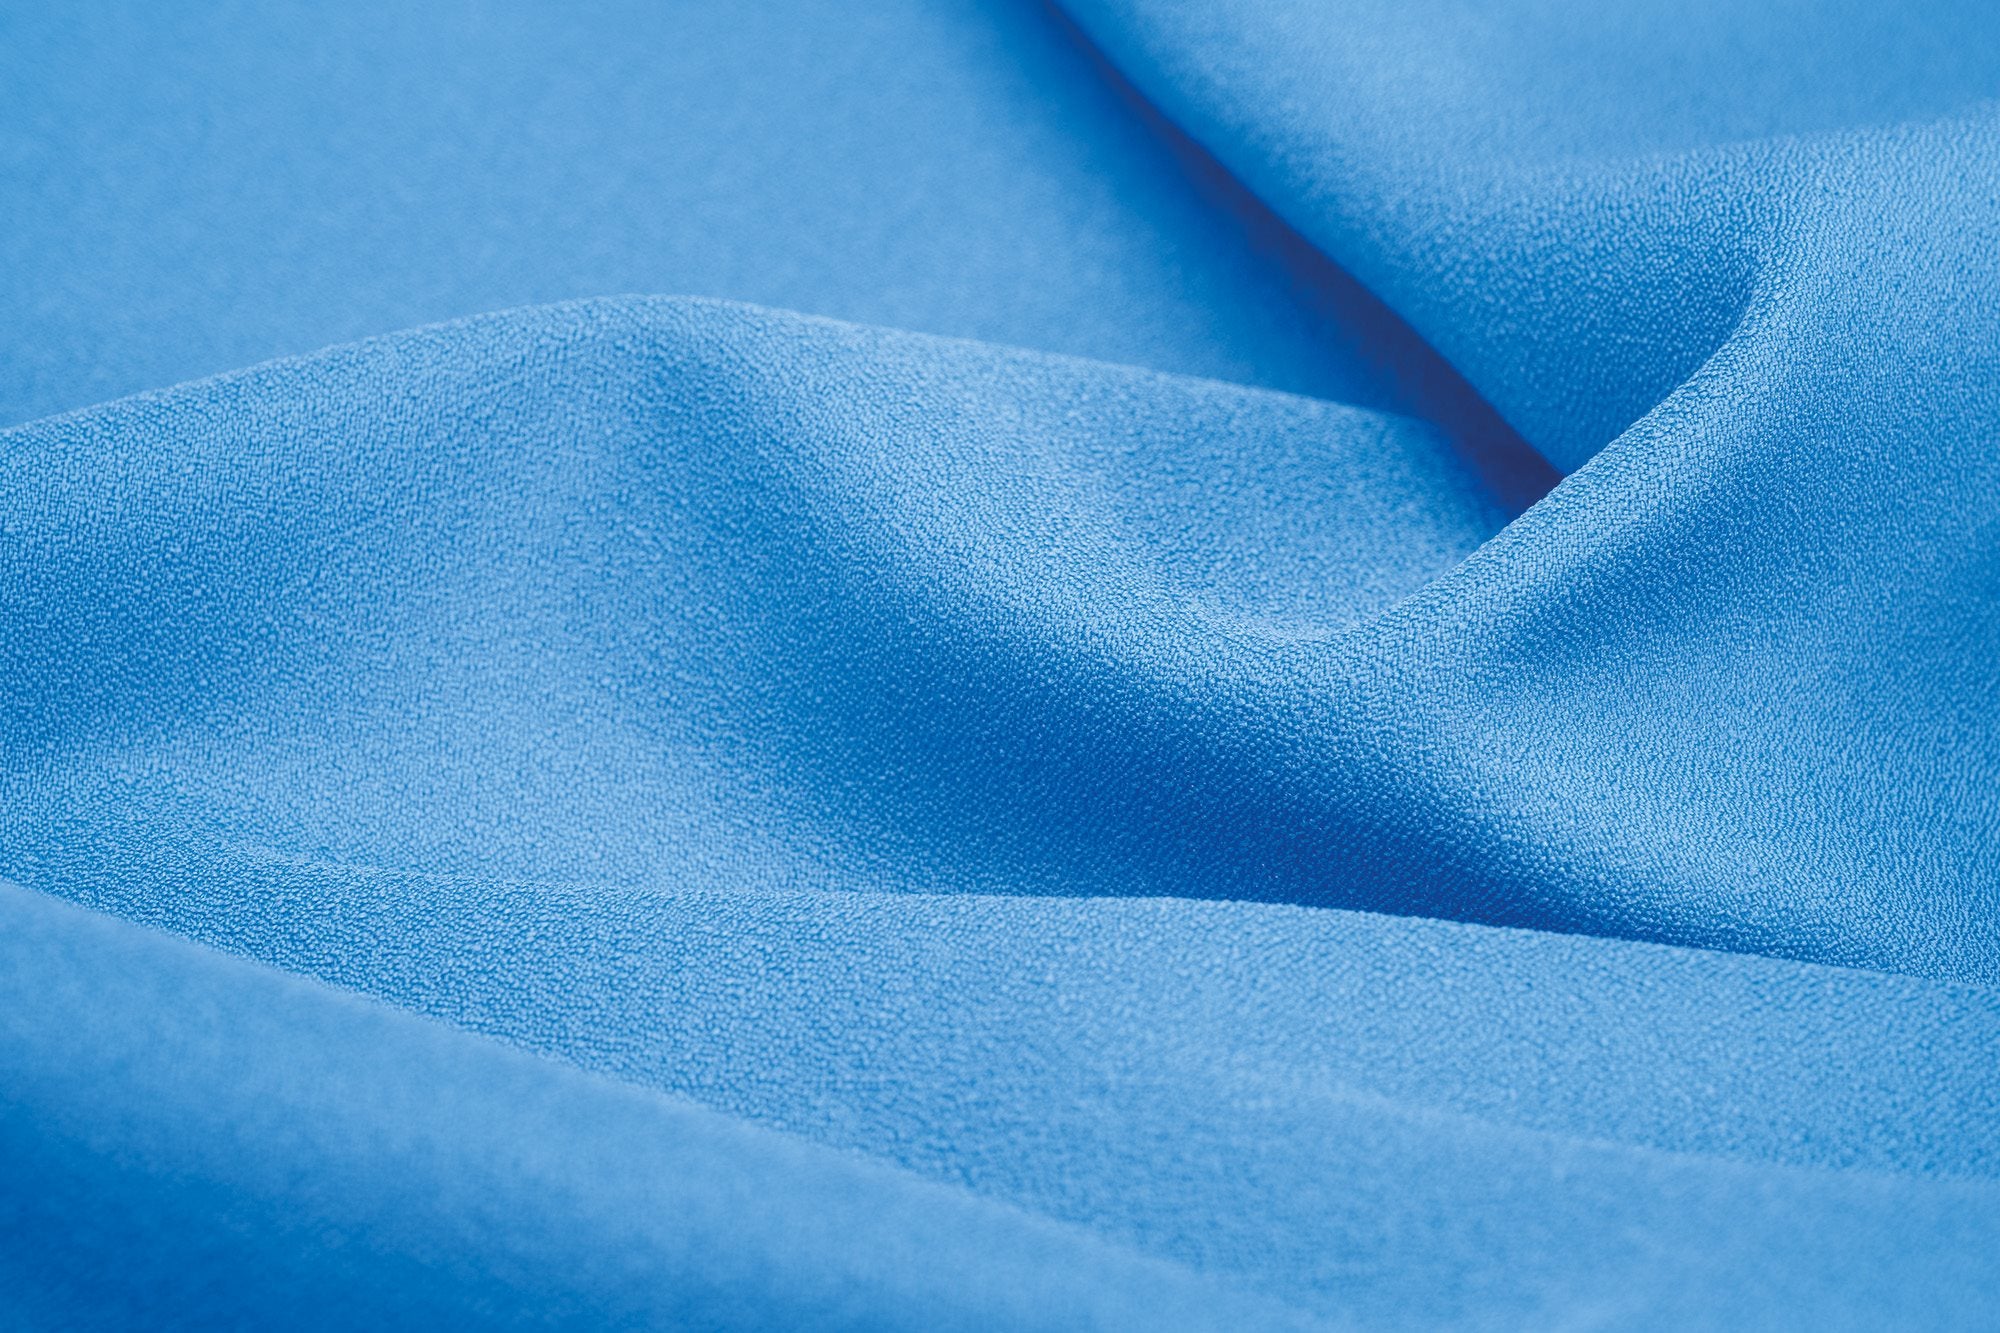 Cocoon Towel Hyperlight - Large- Lagoon blue Sneldrogende handdoeken - Reisartikelen-nl